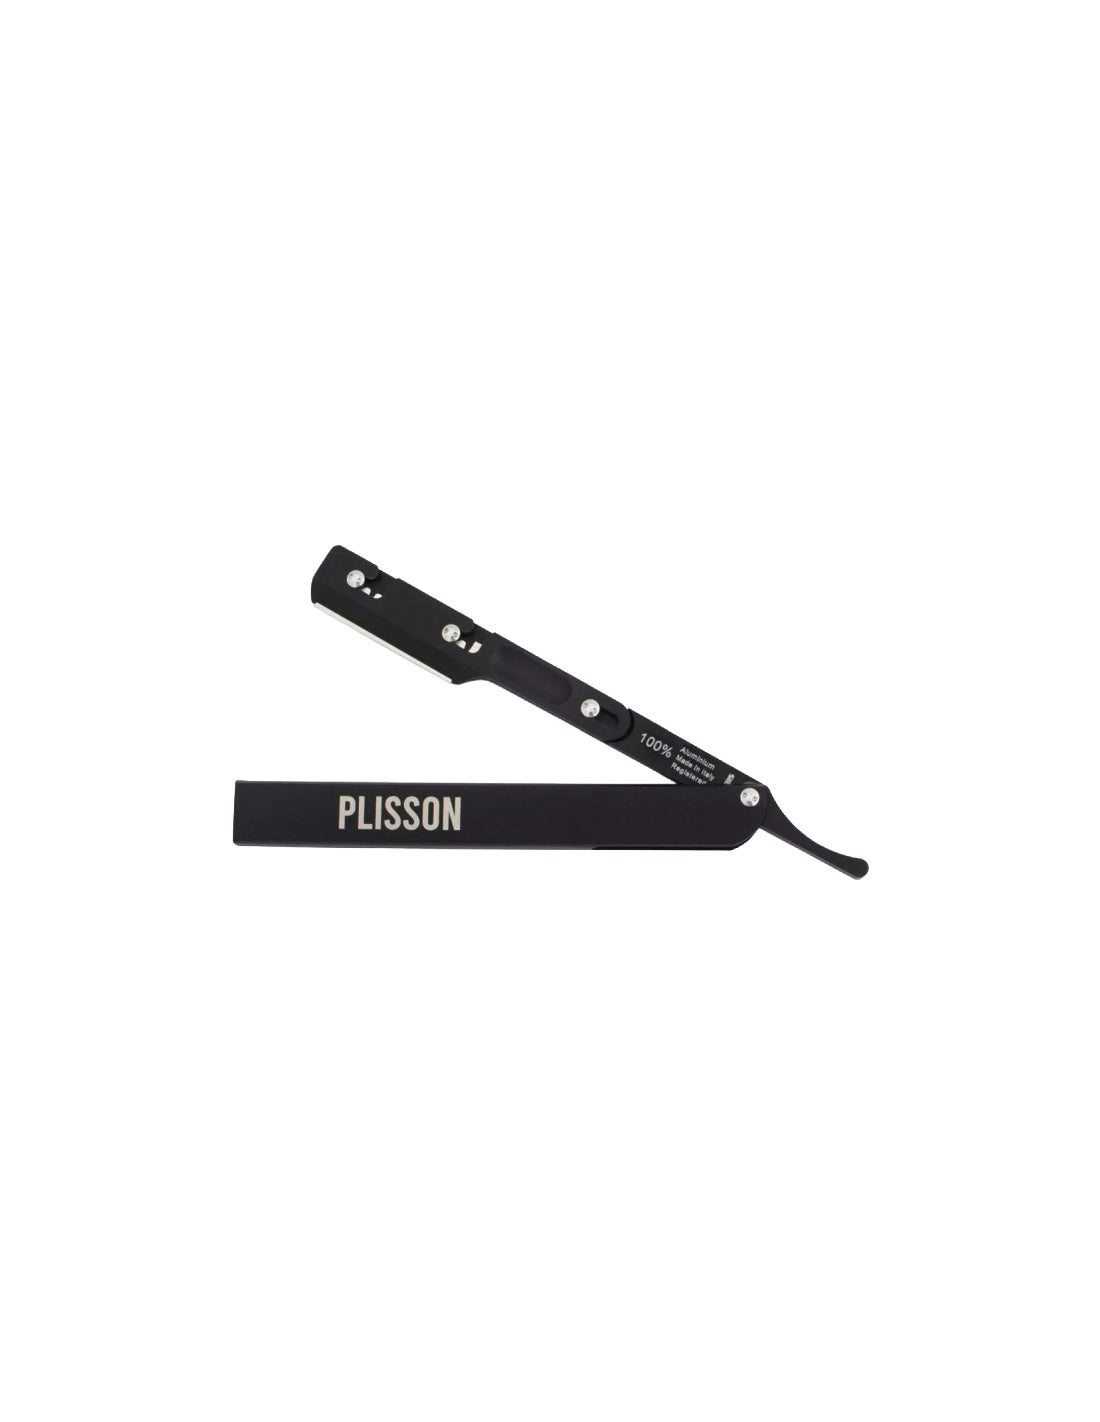 Plisson 1808 Aluminium Shavette - Black